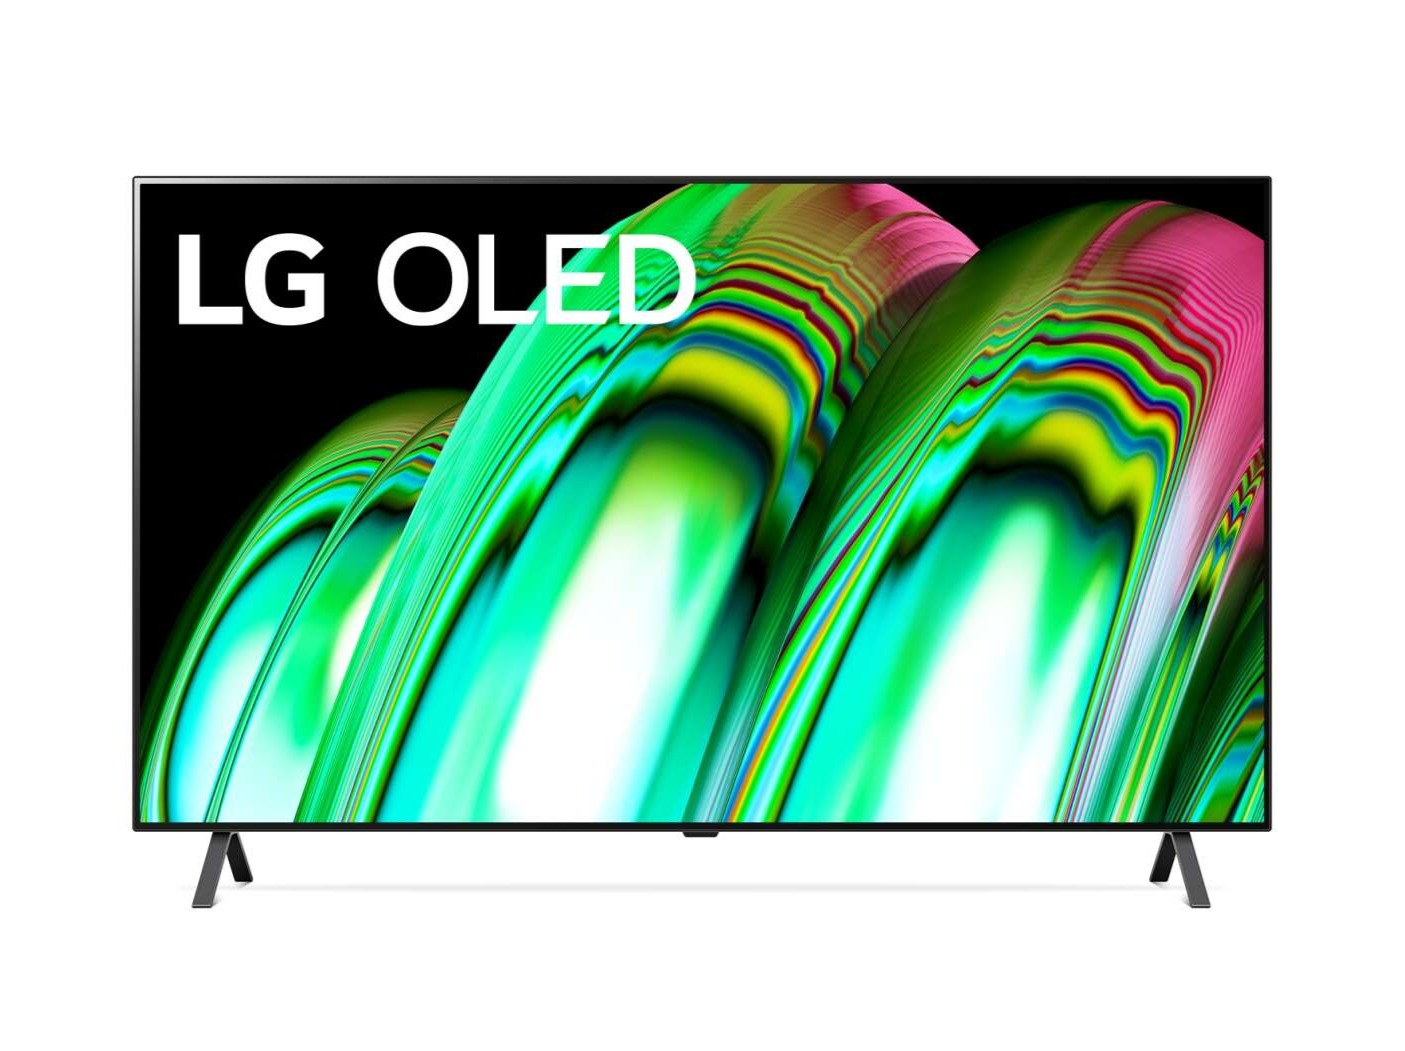 LG 48A2 OLED televízió előlnézetben talpon, a kijelzőn lg oled logó és zöldes rózsaszín absztrakt ábra